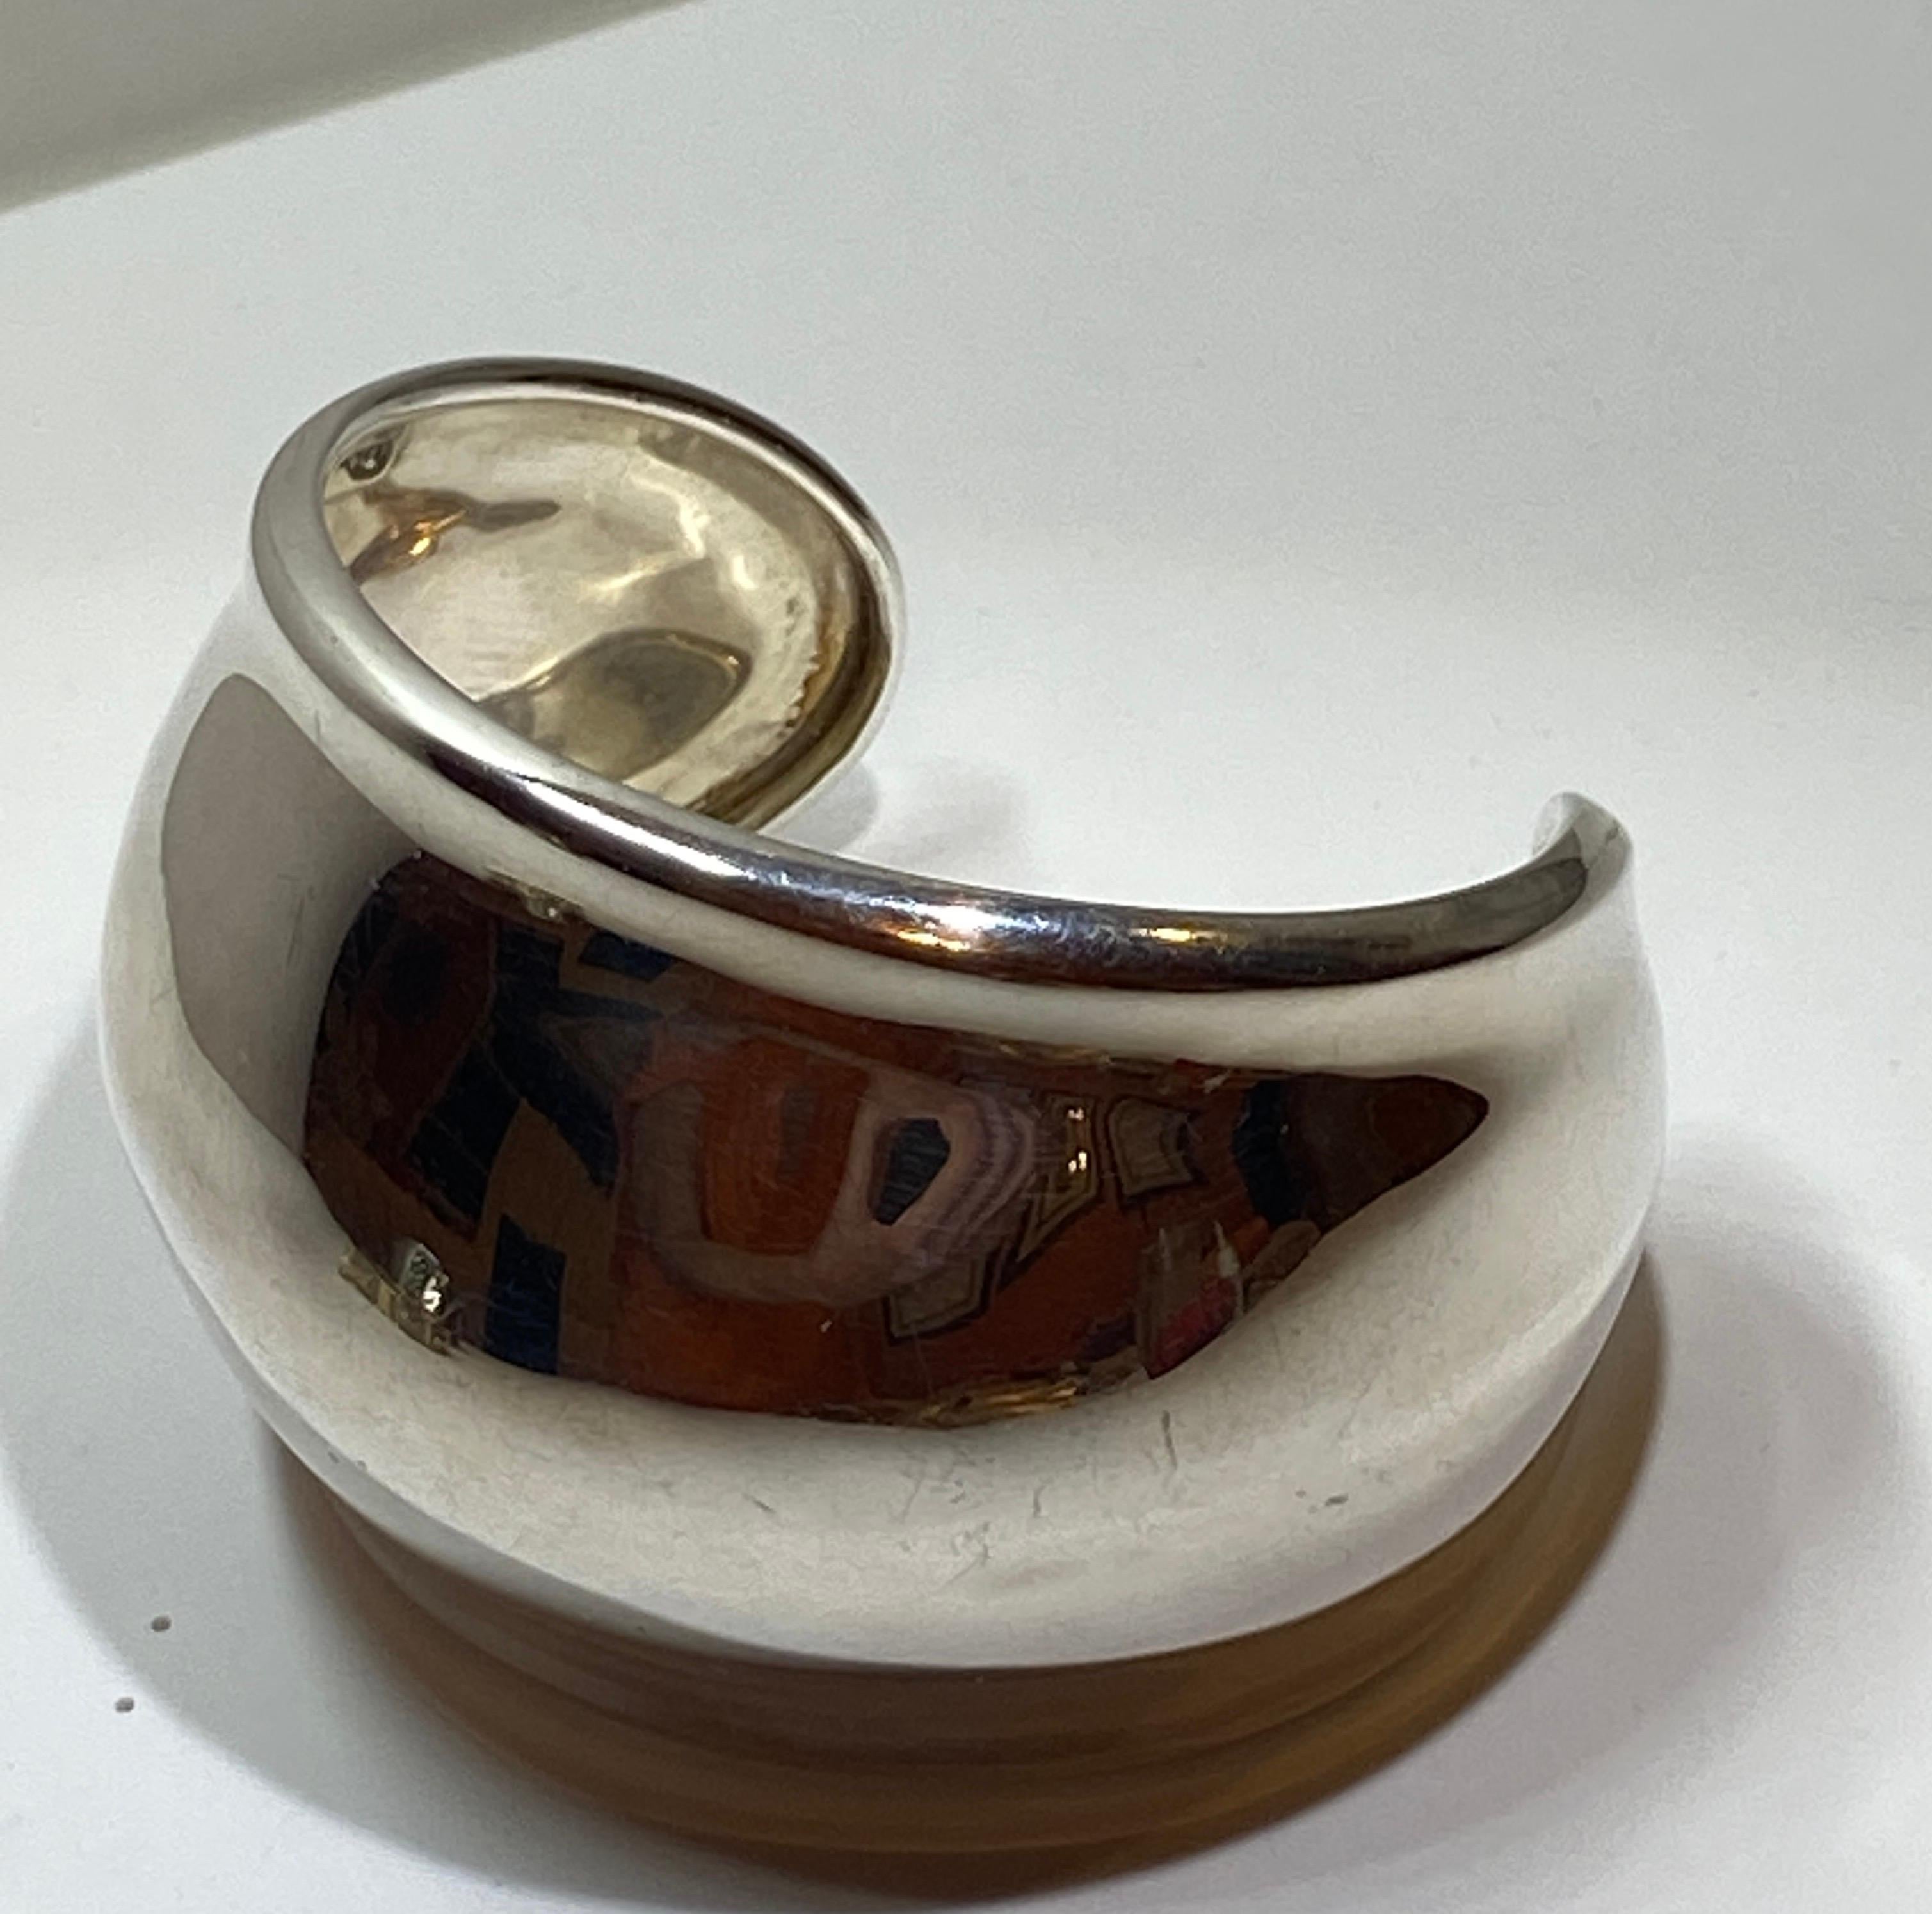     Le bracelet Yvone Christa Large polished sterling silver cuff mesure 8 1/4 inches in circumference. La largeur mesure respectivement 1 pouce et 2 pouces. La marque du fabricant est gravée à l'intérieur. Fabriqué aux États-Unis.